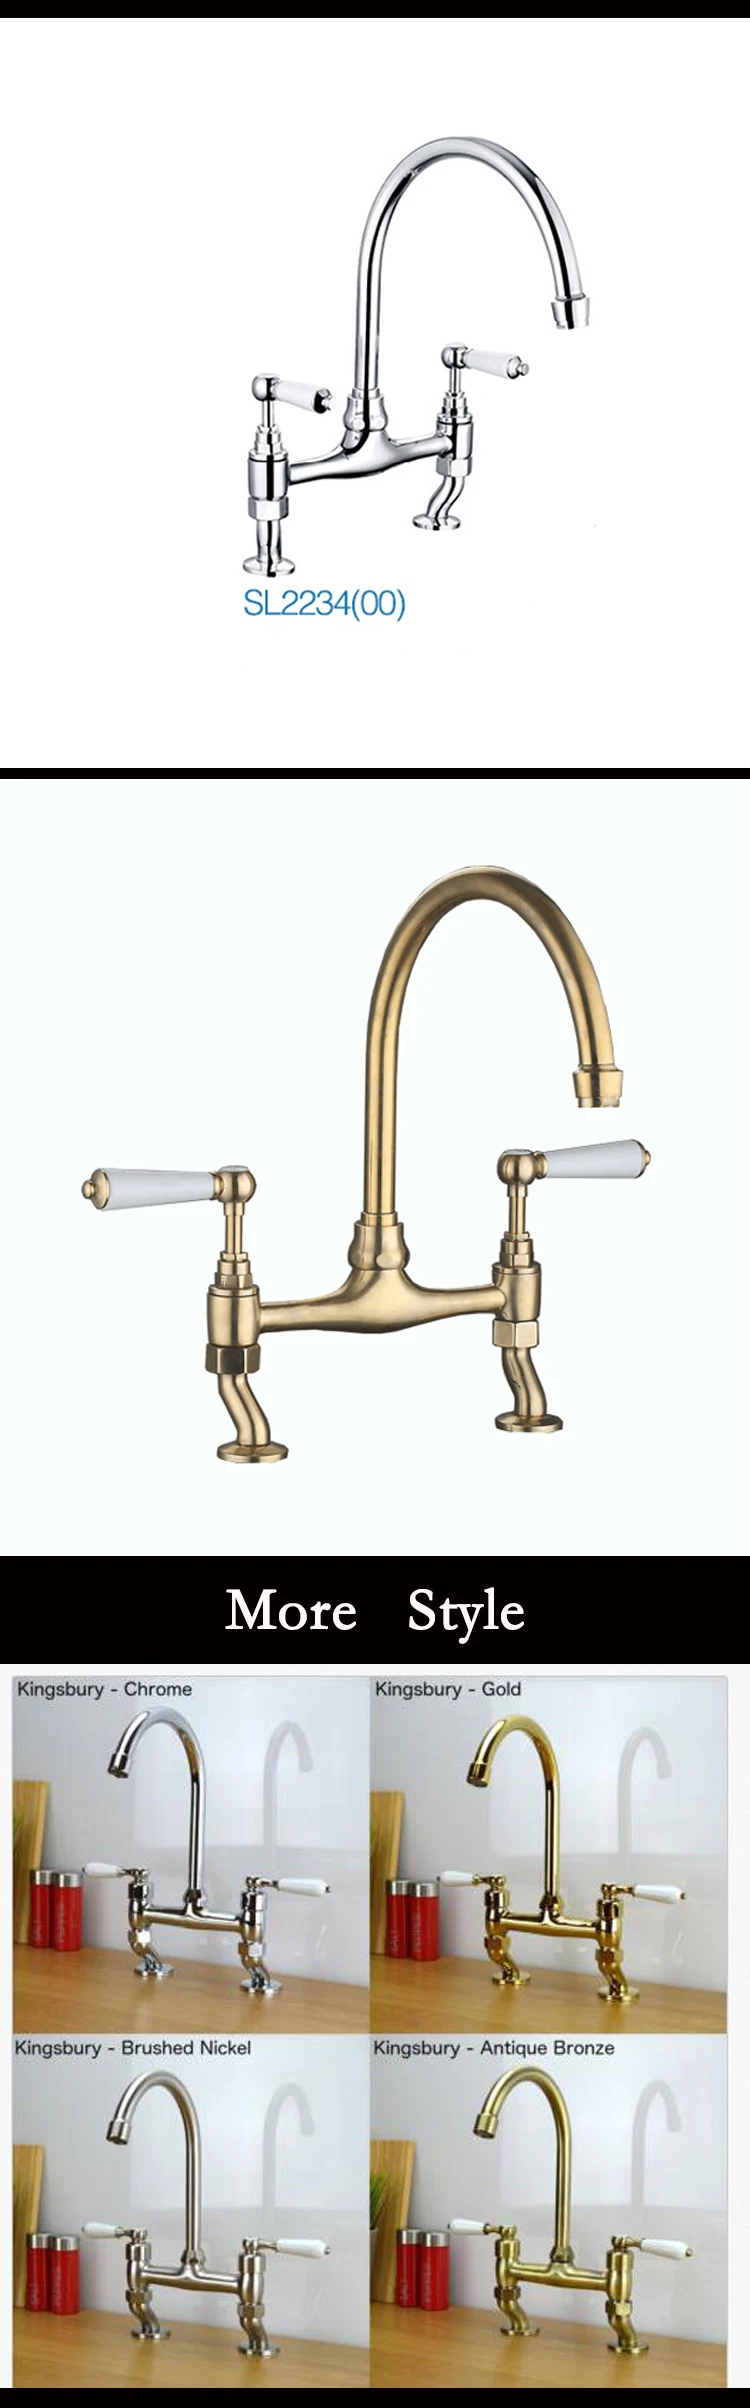 High quality bridge double handle antique luxury brass gold kitchen faucet